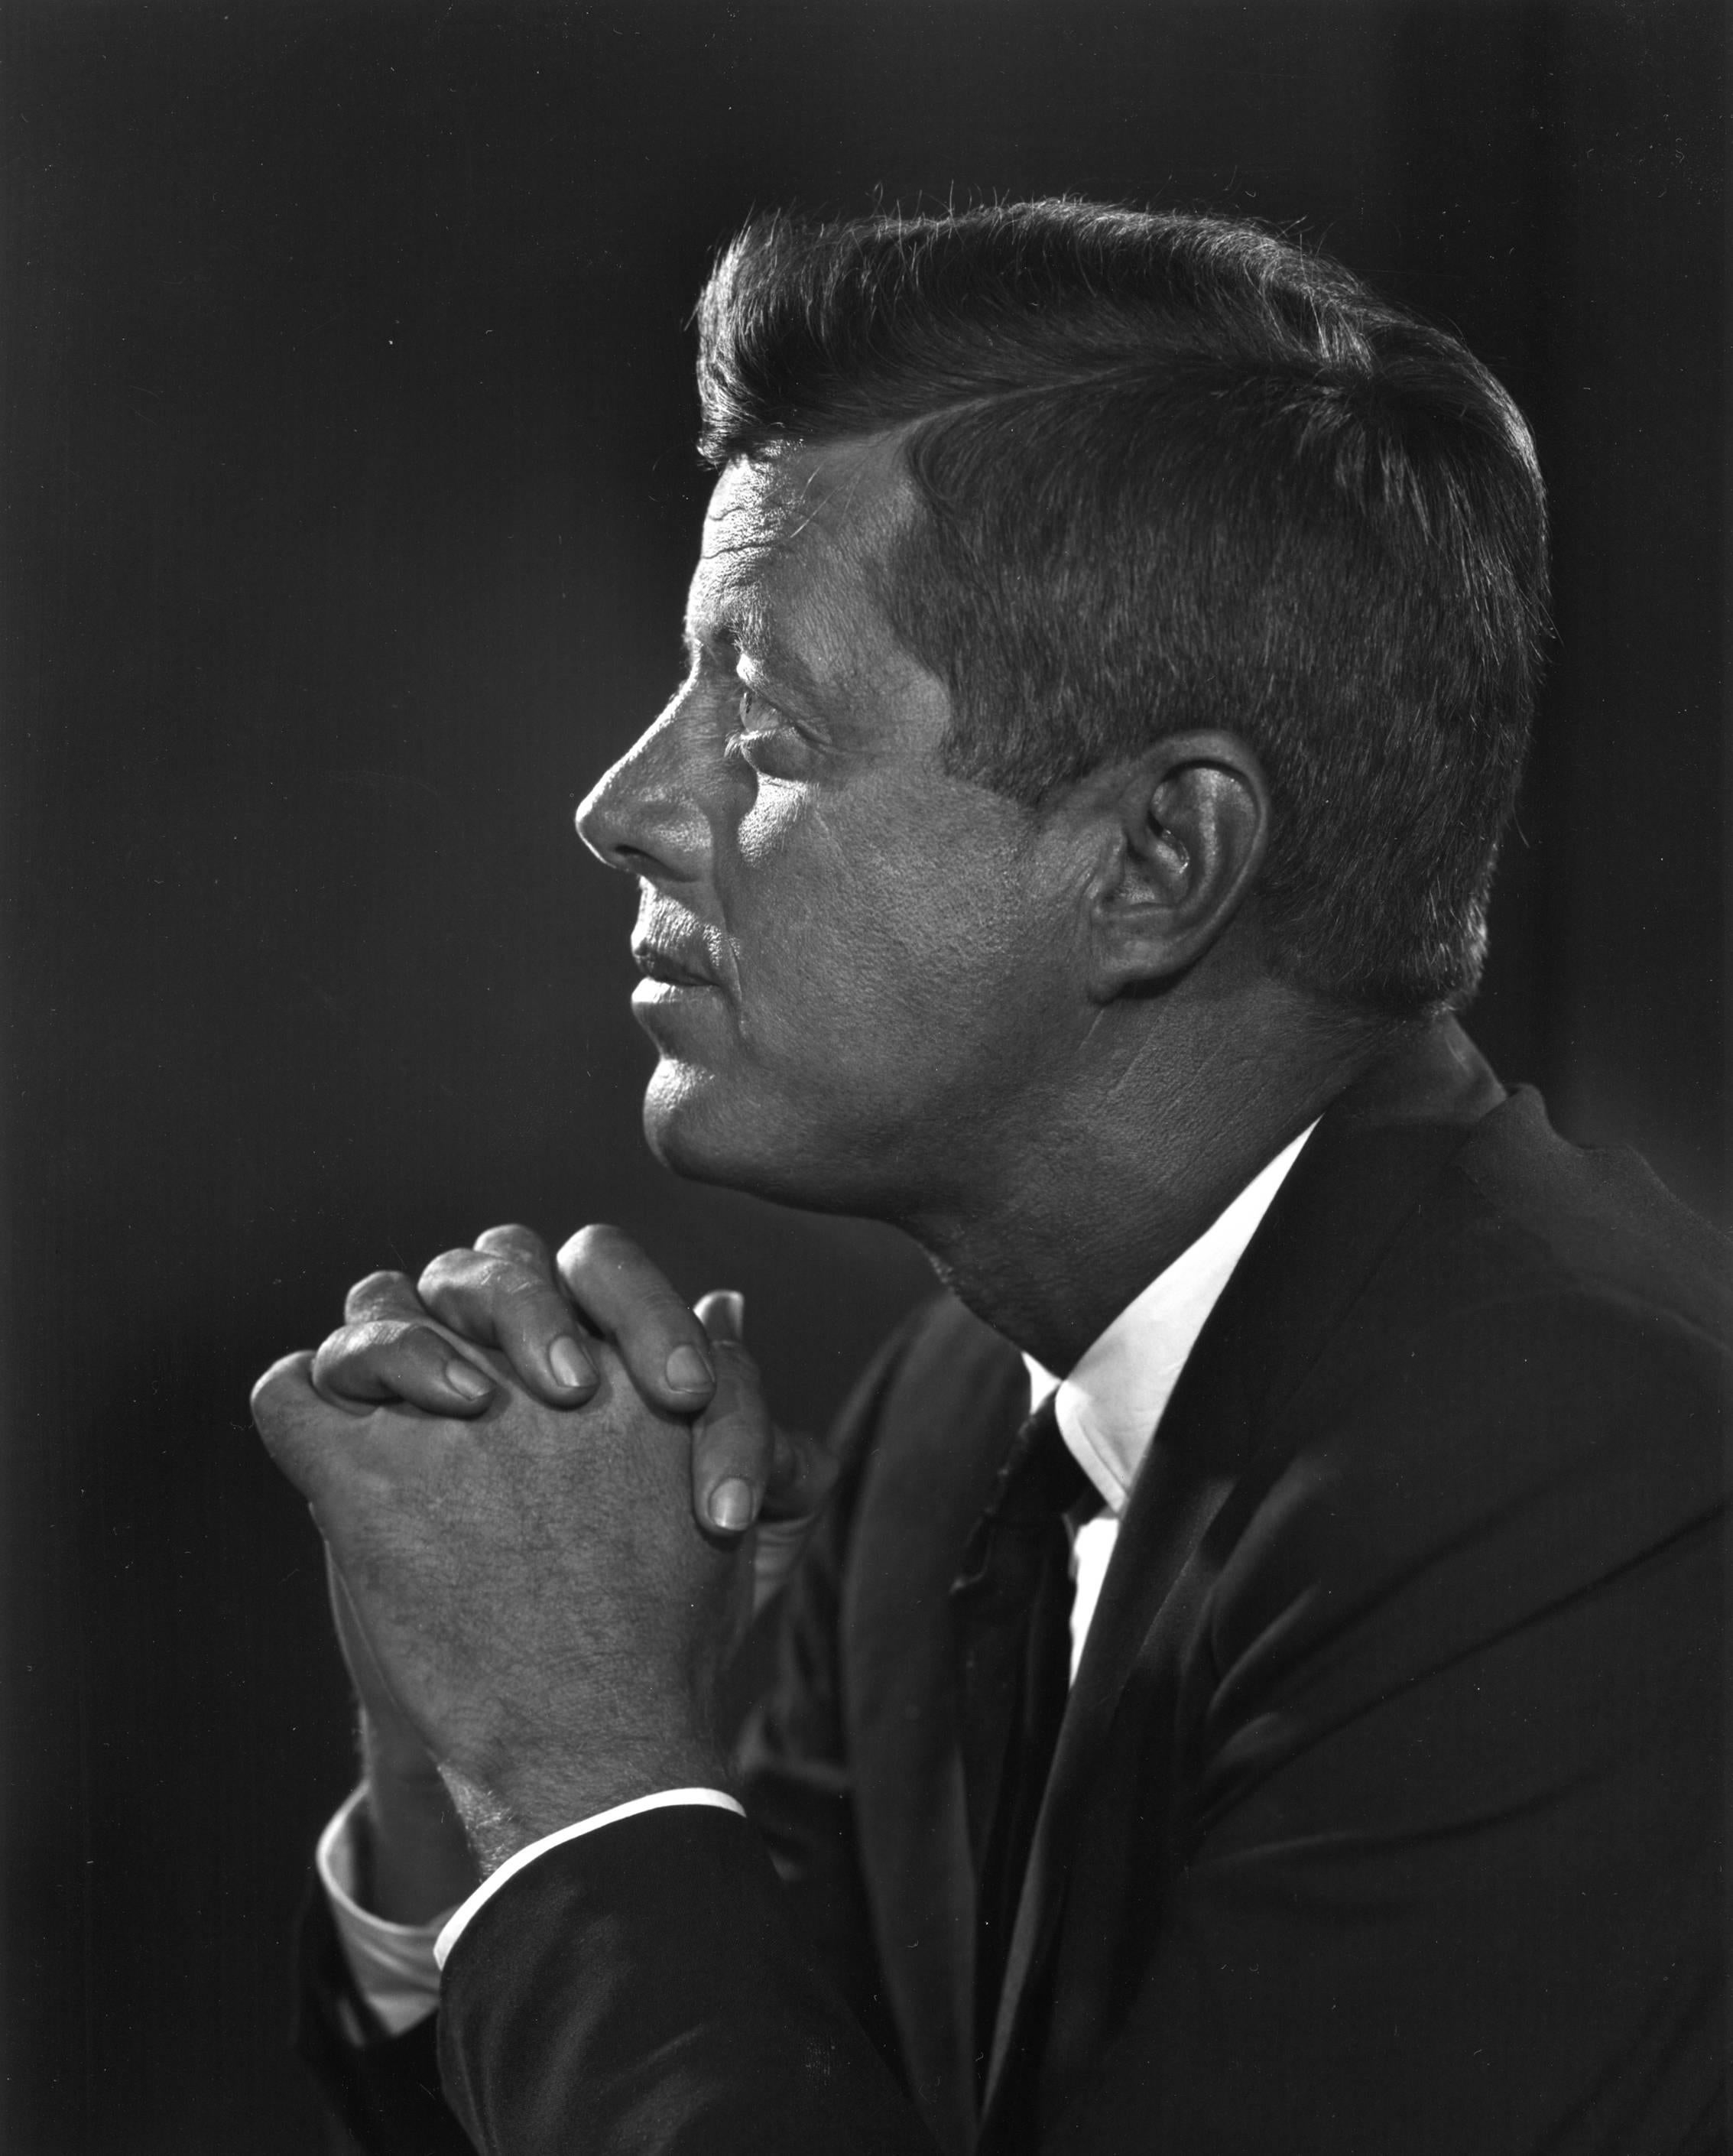 John F. Kennedy, 1960 - Yousuf Karsh (Photographie de portrait)
Signé sur le support
Épreuve à la gélatine argentique montée sur carton, imprimée par l'artiste ou sous sa supervision directe.
13 x 101/4 pouces
Provenance : Succession de Yousuf